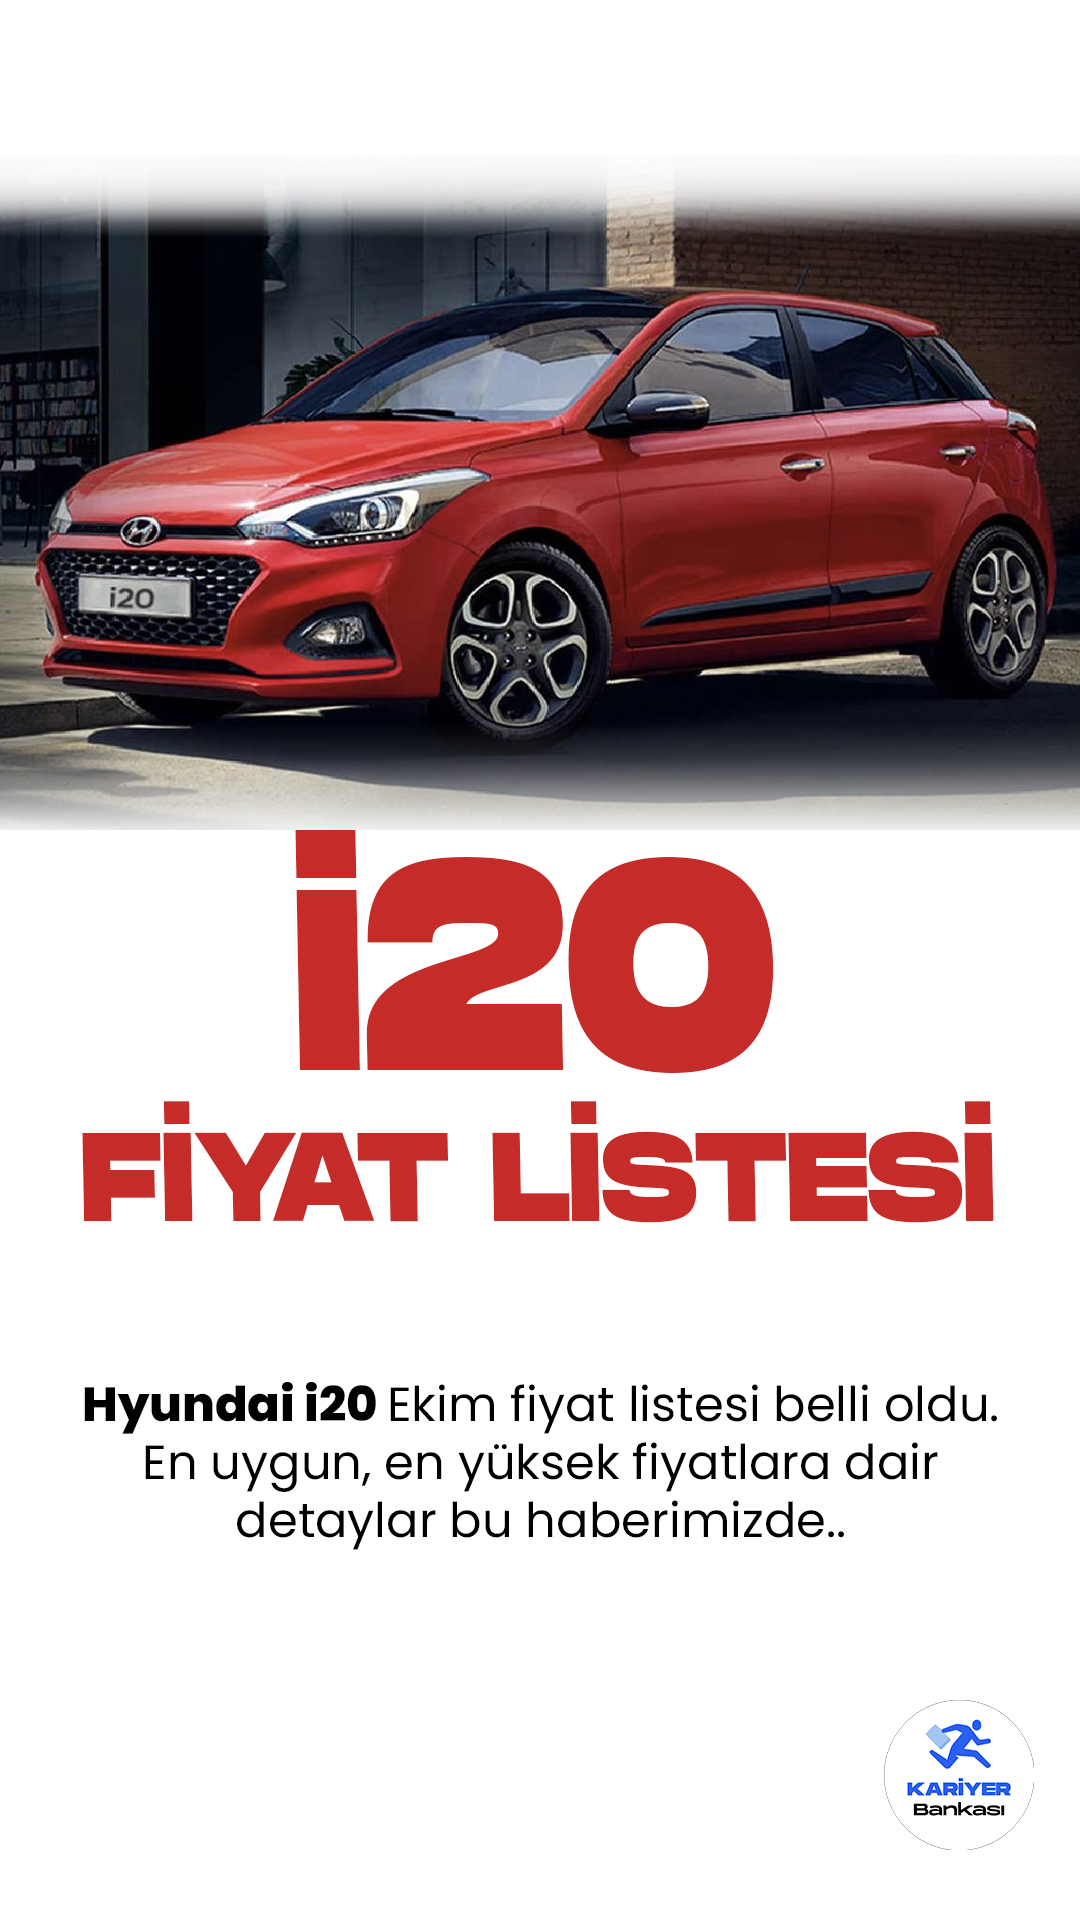 Hyundai i20 Ekim 2023 Fiyat Listesi Belli Oldu!Hyundai'nin son modeli, i20, kompakt otomobil segmentinde büyük bir etki yaratıyor. Güncellenmiş tasarımı, sportif çizgileri ve modern özellikleriyle dikkat çeken i20, sürücülerin beğenisini kazanıyor.